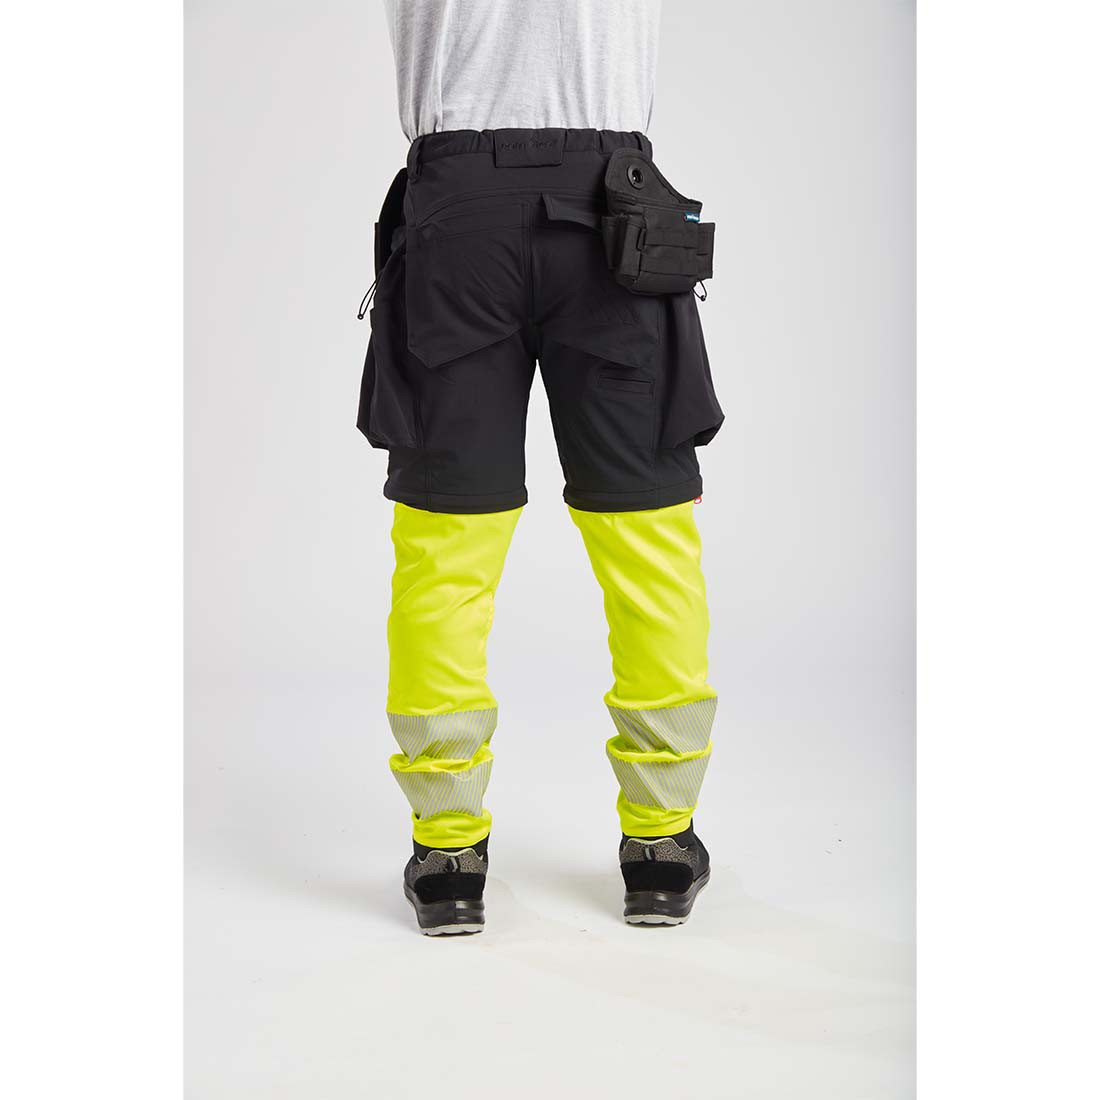 Pantaloni modulari 3 in 1 - Abbigliamento di protezione